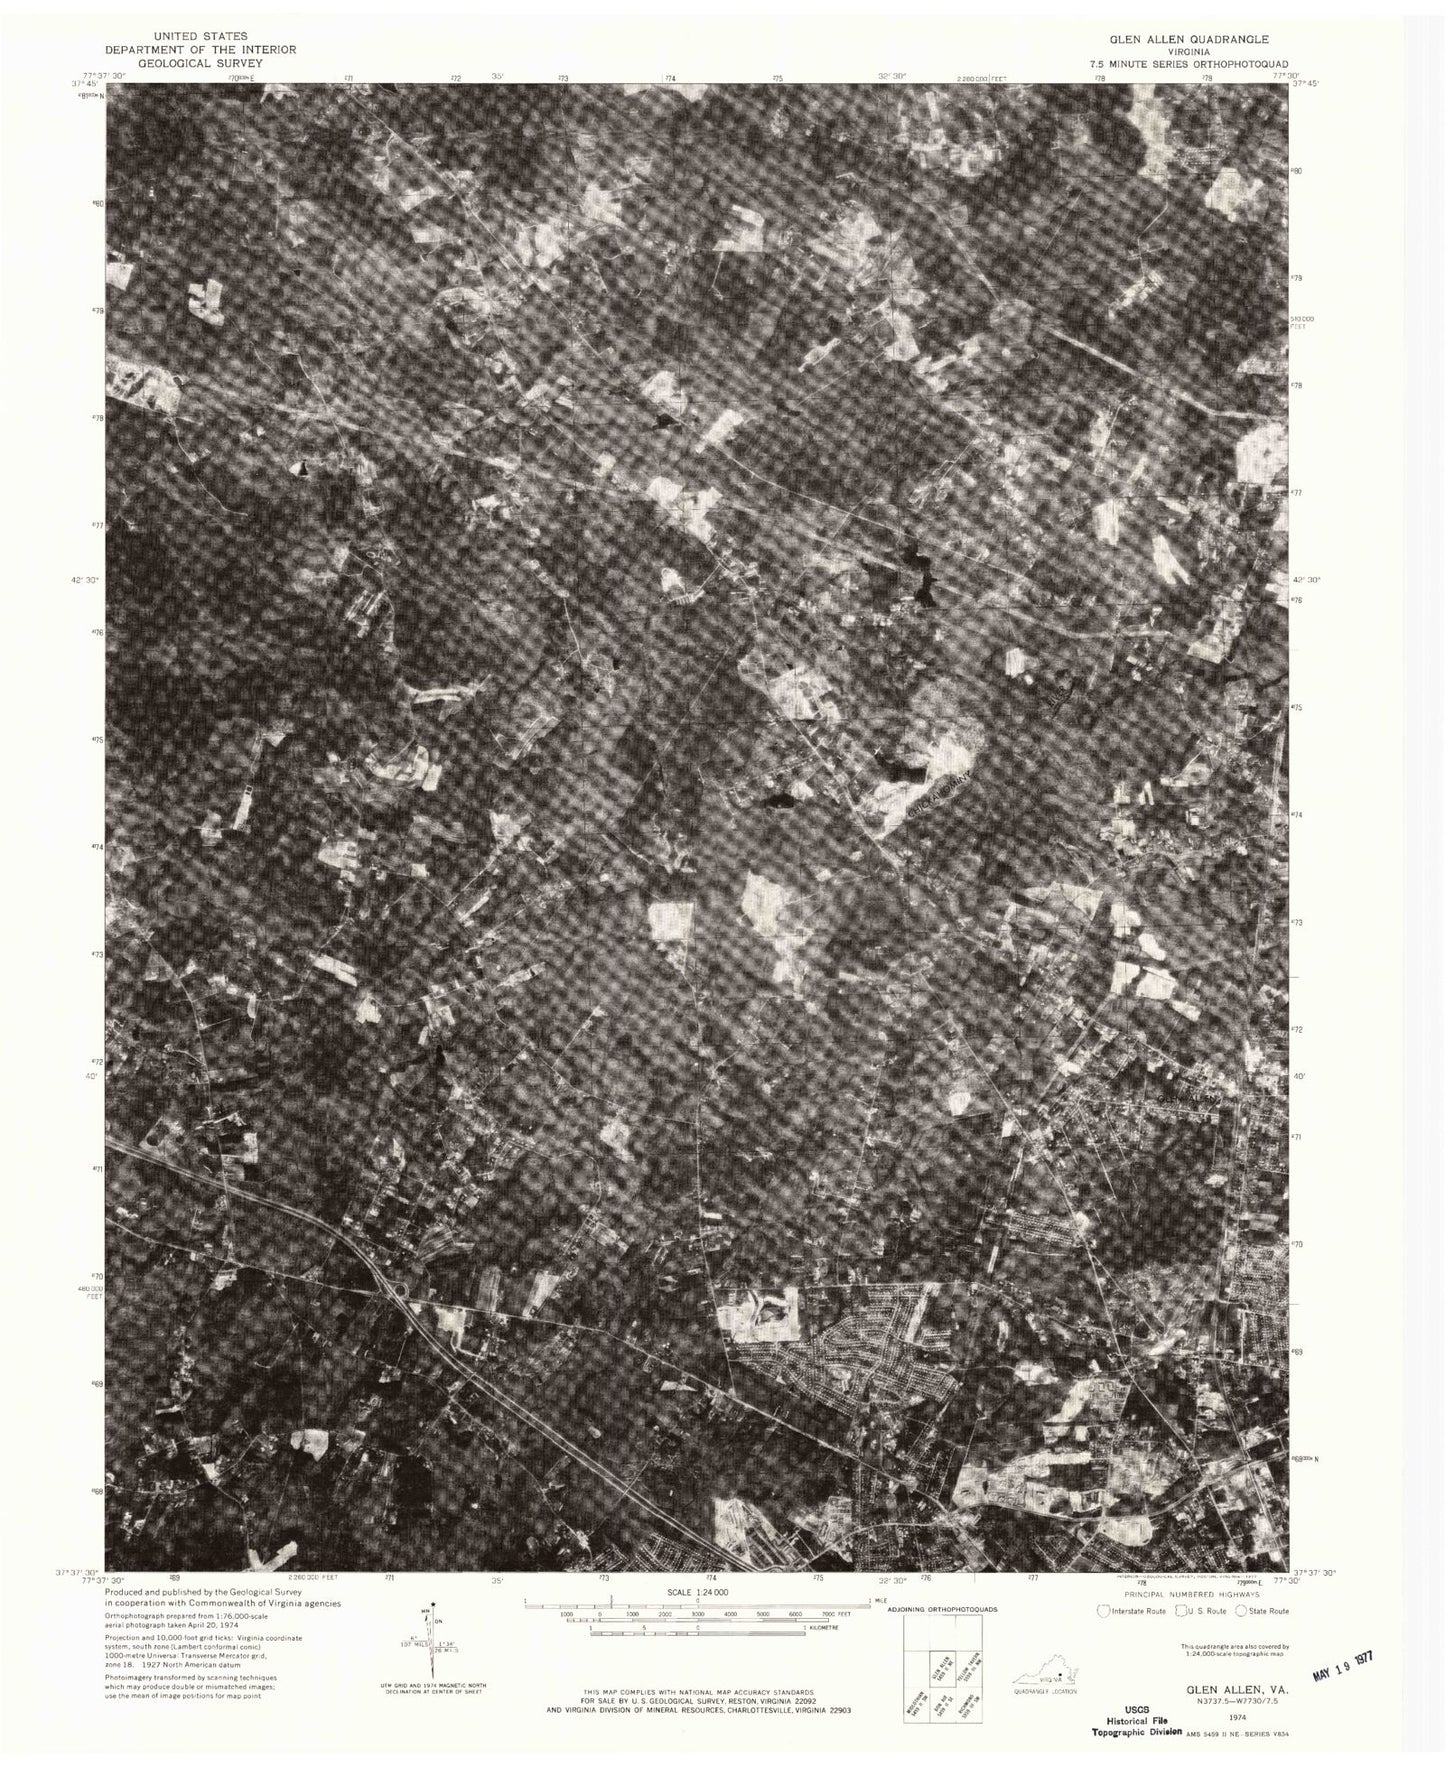 Classic USGS Glen Allen Virginia 7.5'x7.5' Topo Map Image